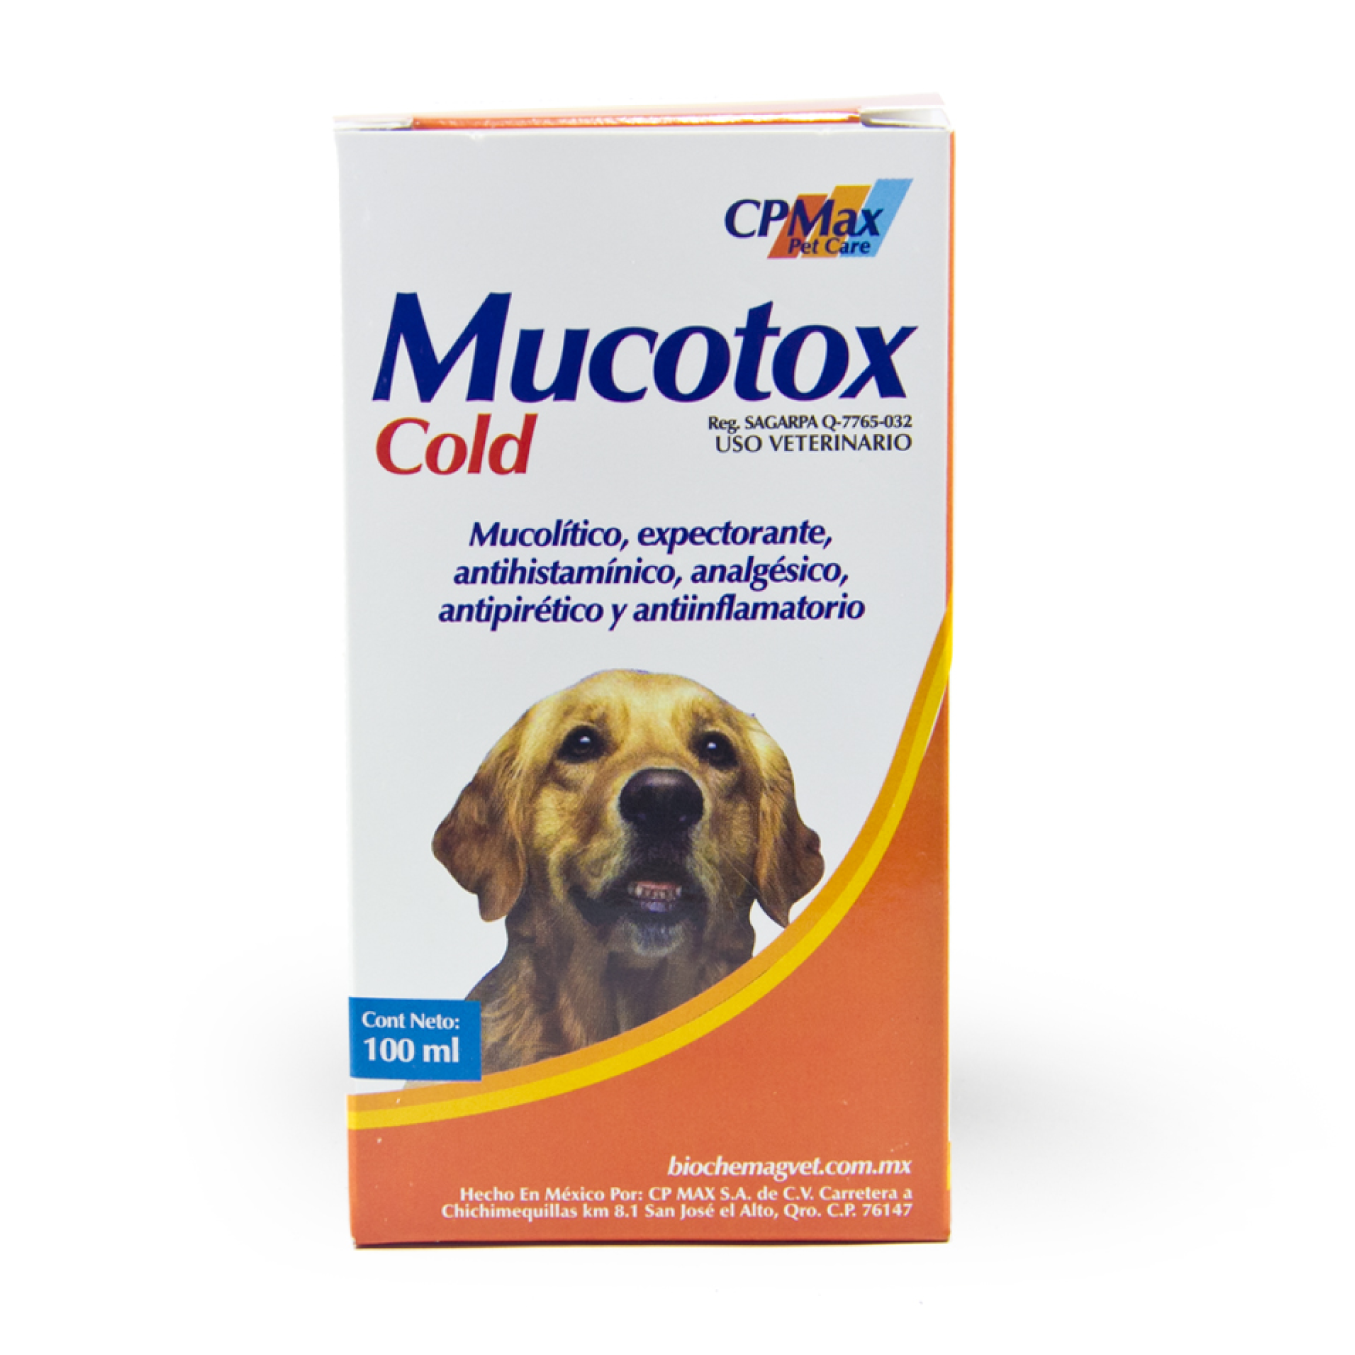 mucotox cold cpmax mucolitico 100 ml